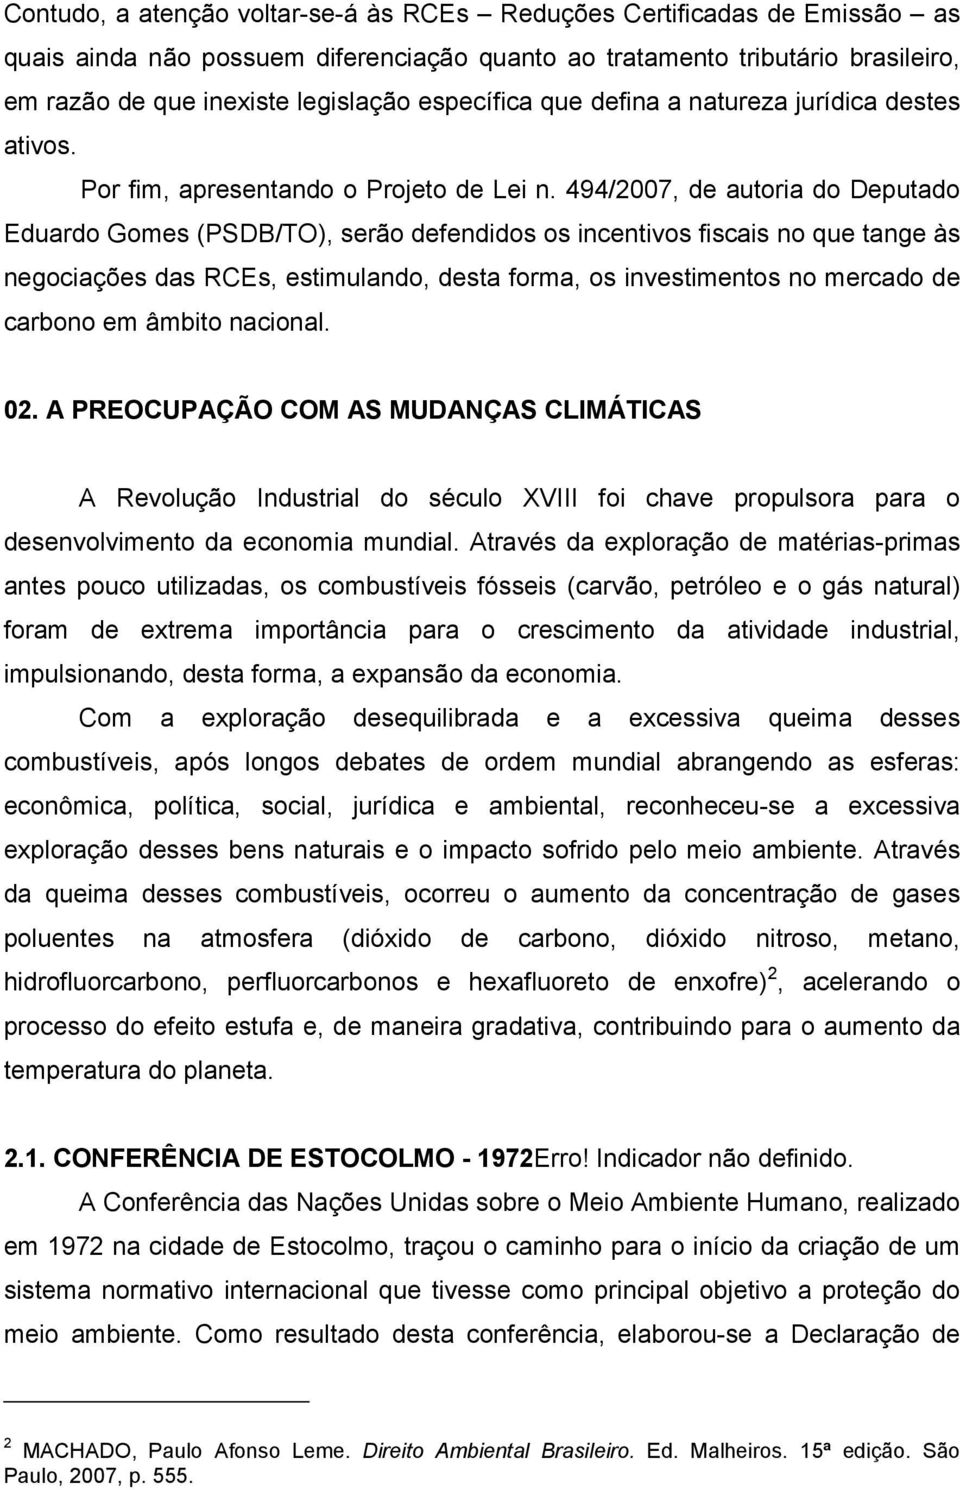 494/2007, de autoria do Deputado Eduardo Gomes (PSDB/TO), serão defendidos os incentivos fiscais no que tange às negociações das RCEs, estimulando, desta forma, os investimentos no mercado de carbono